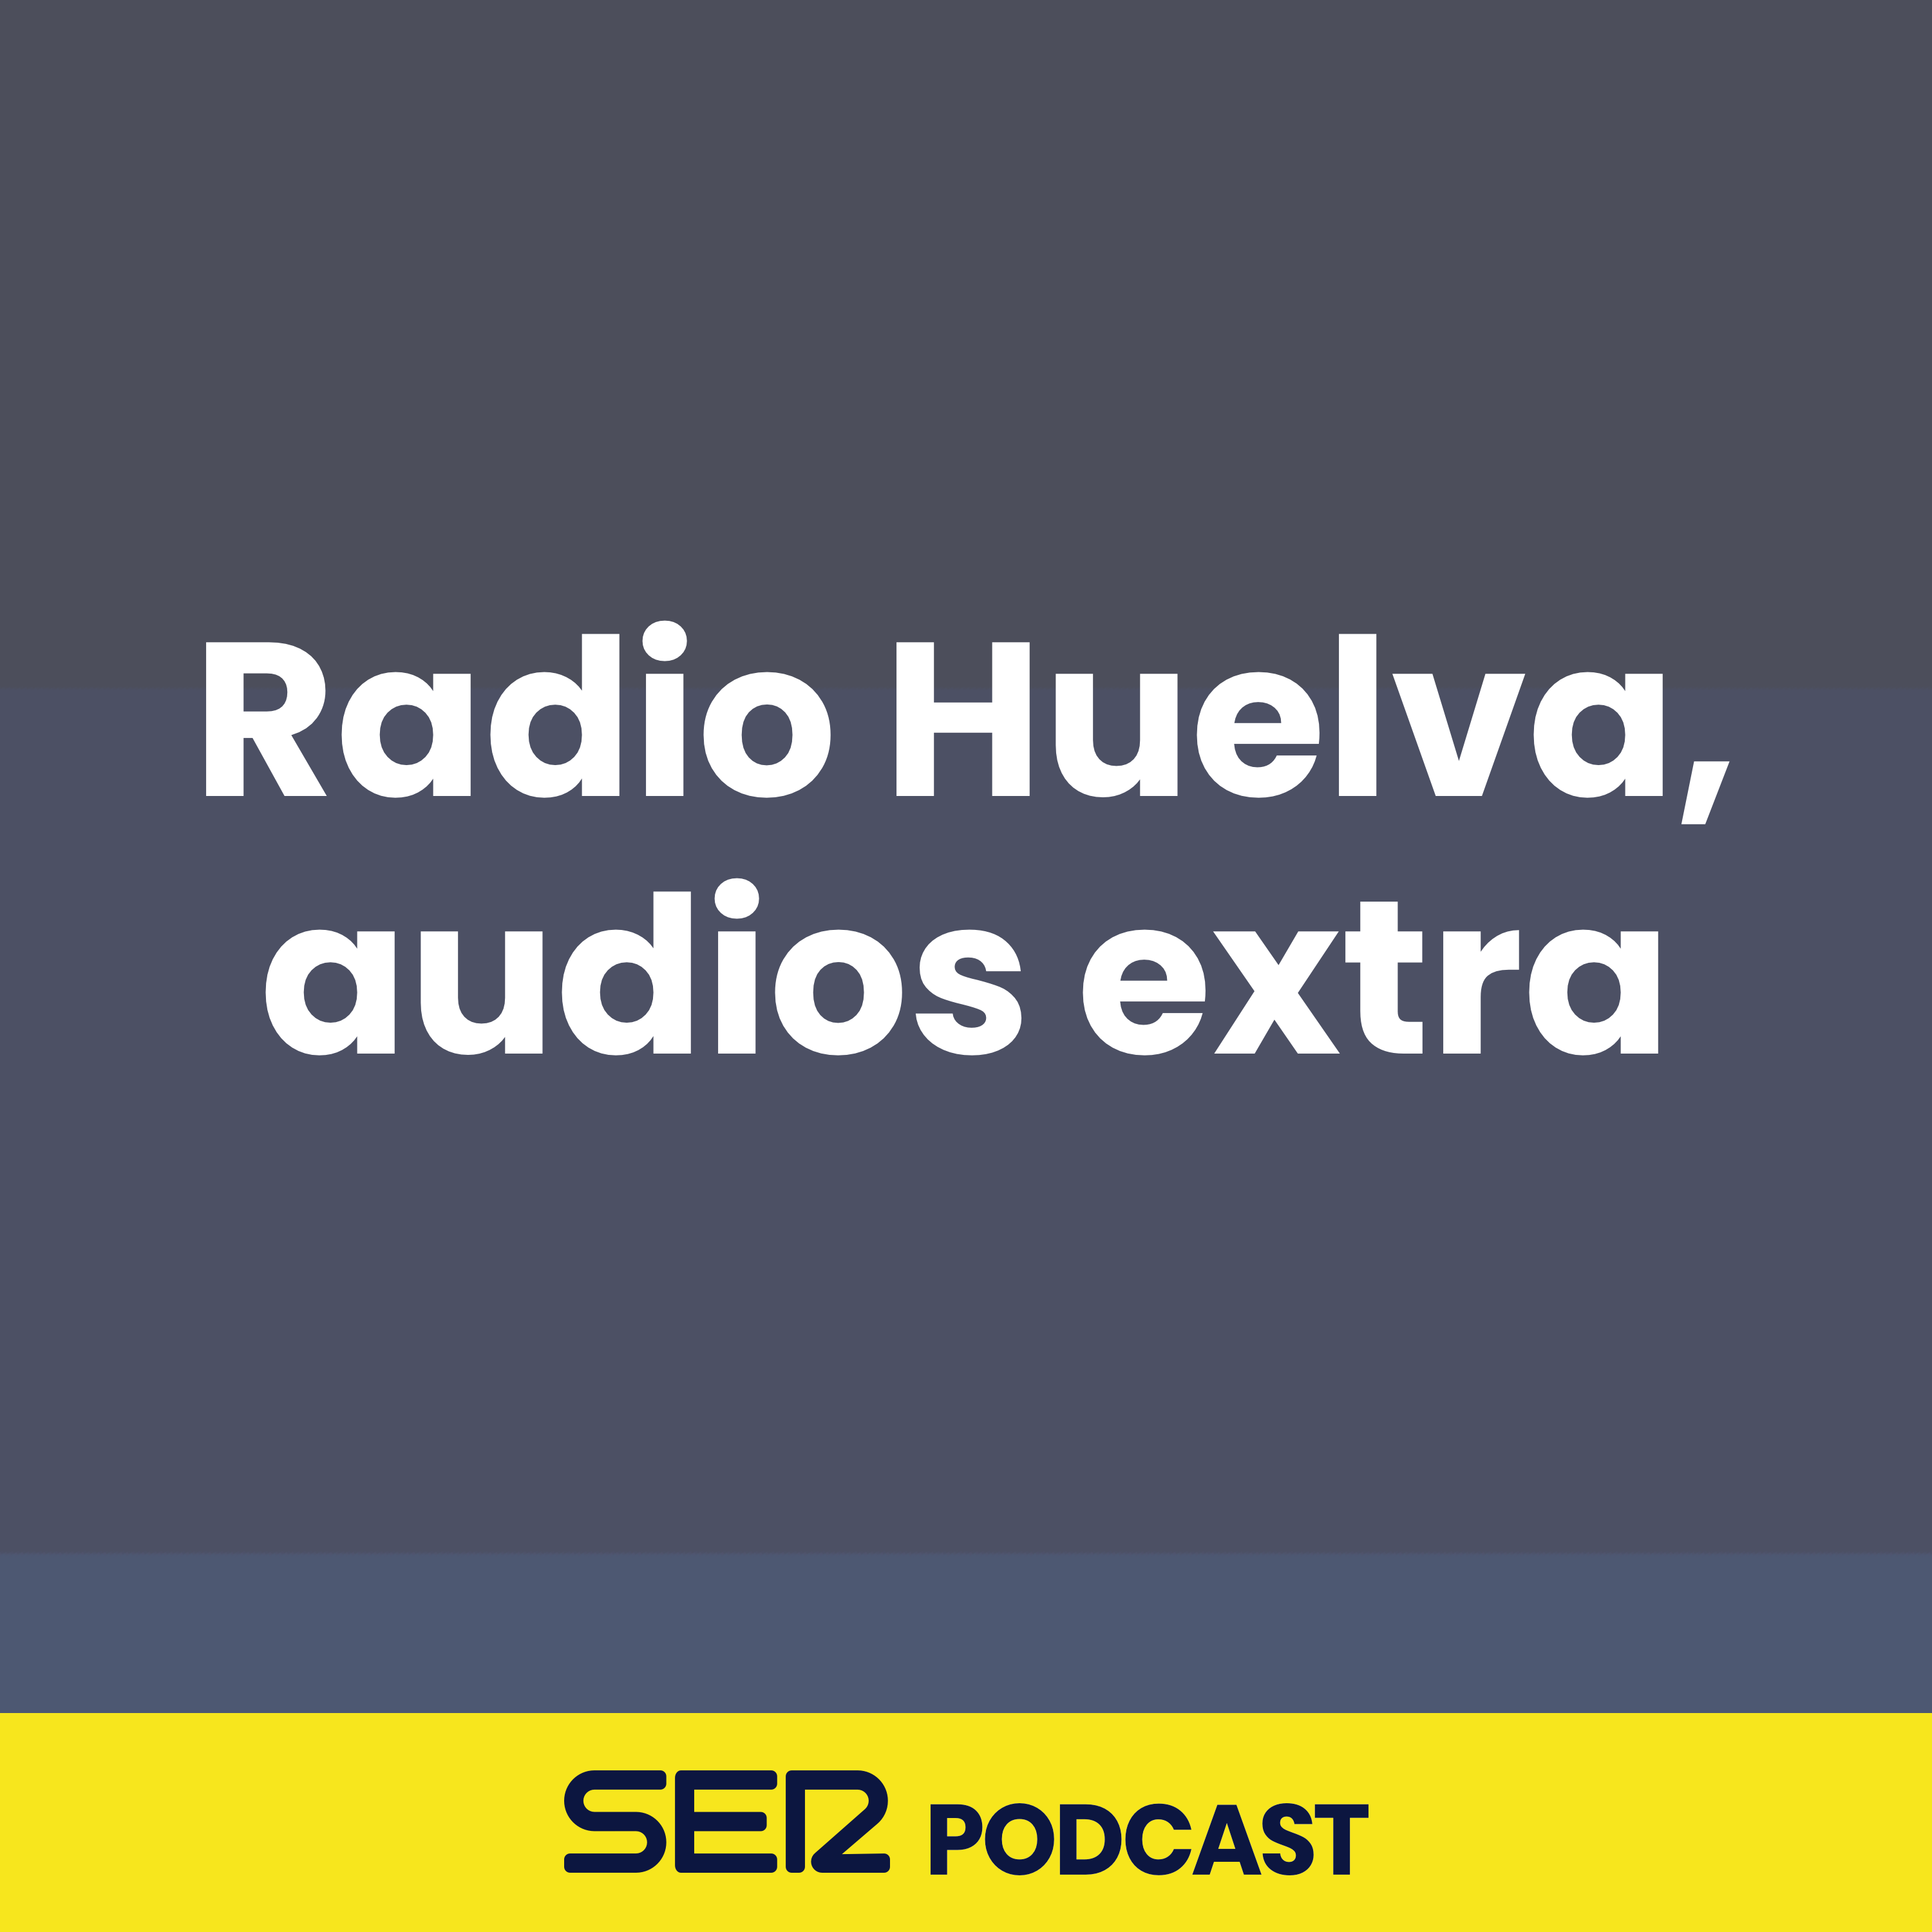 Radio Huelva, audios extra